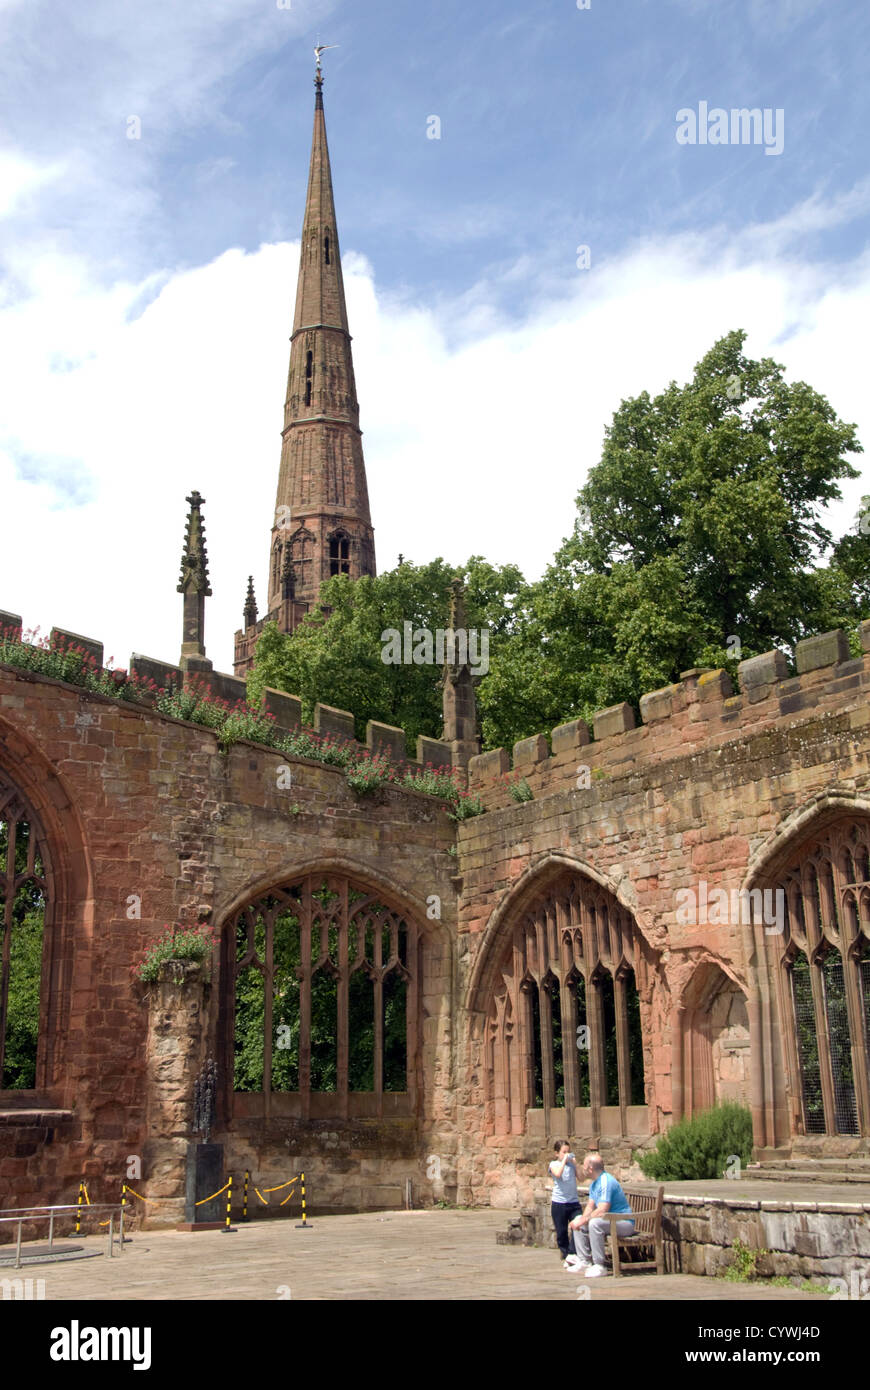 WARWICKSHIRE;COVENTRY; sezione della bomba ha danneggiato navata della Cattedrale Coventry con chiesa della Santa Trinità la guglia IN BACKGROUND Foto Stock